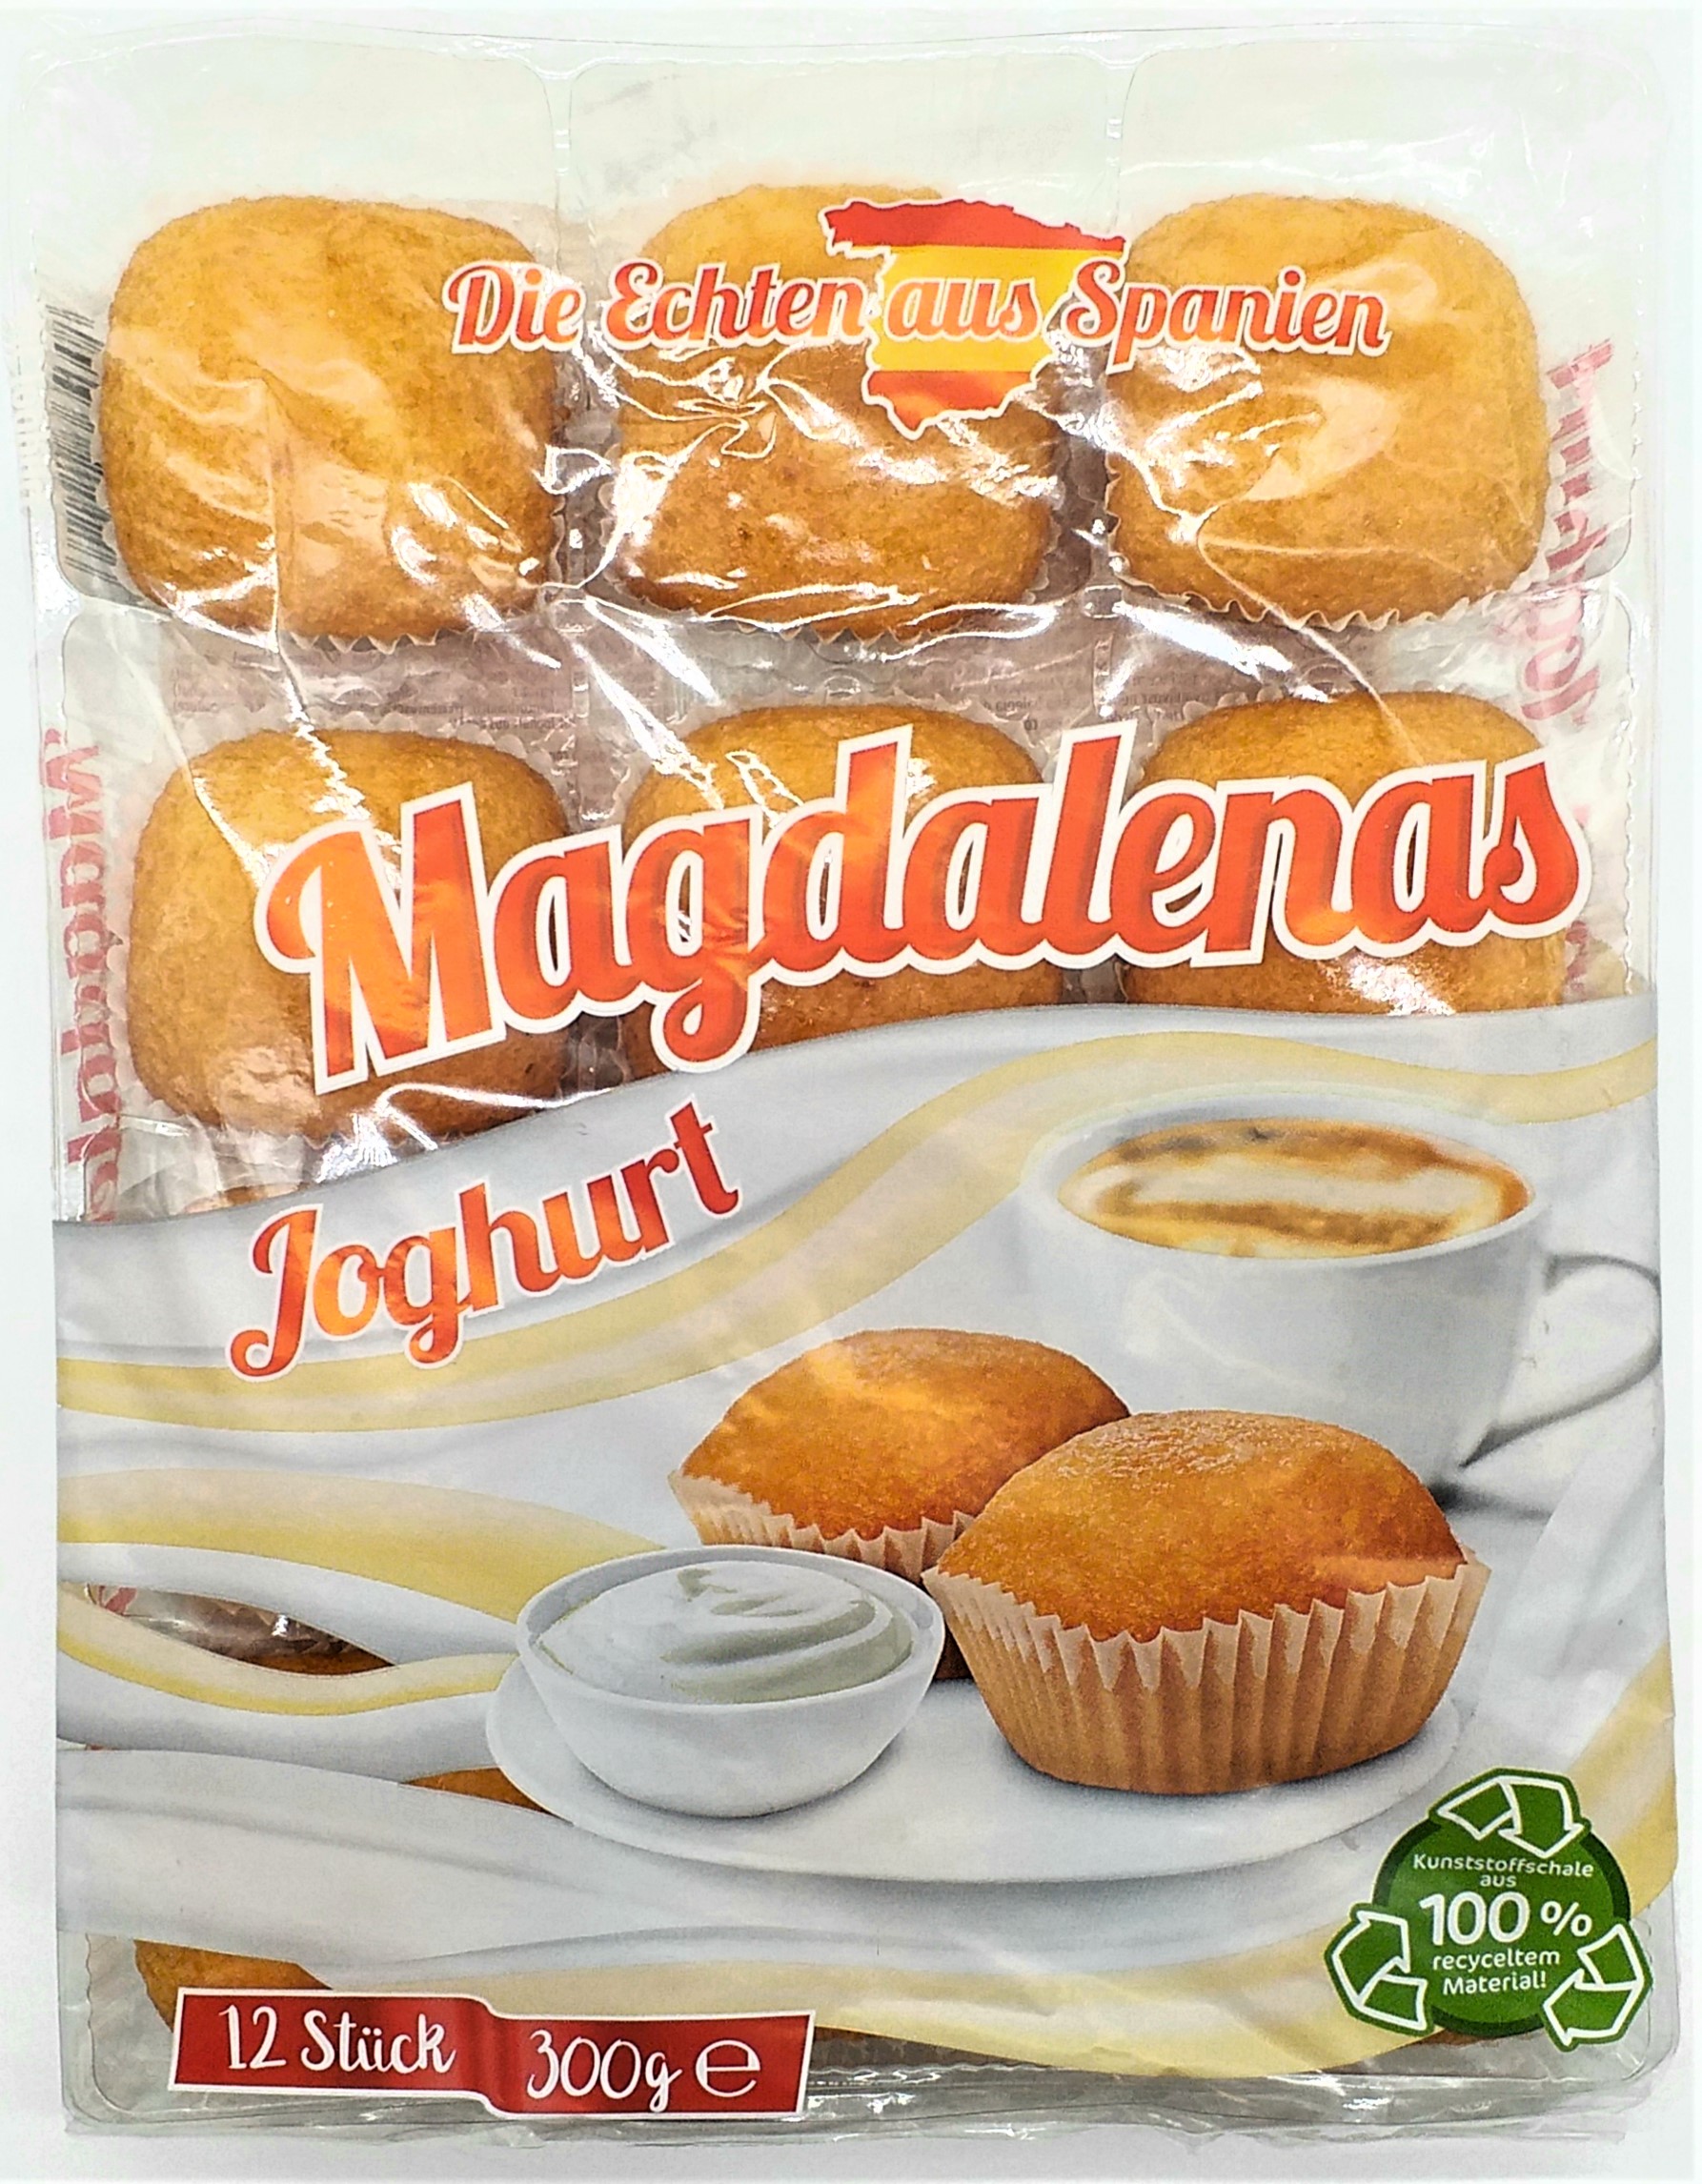 Pico Food Magdalenas Joghurt  300g